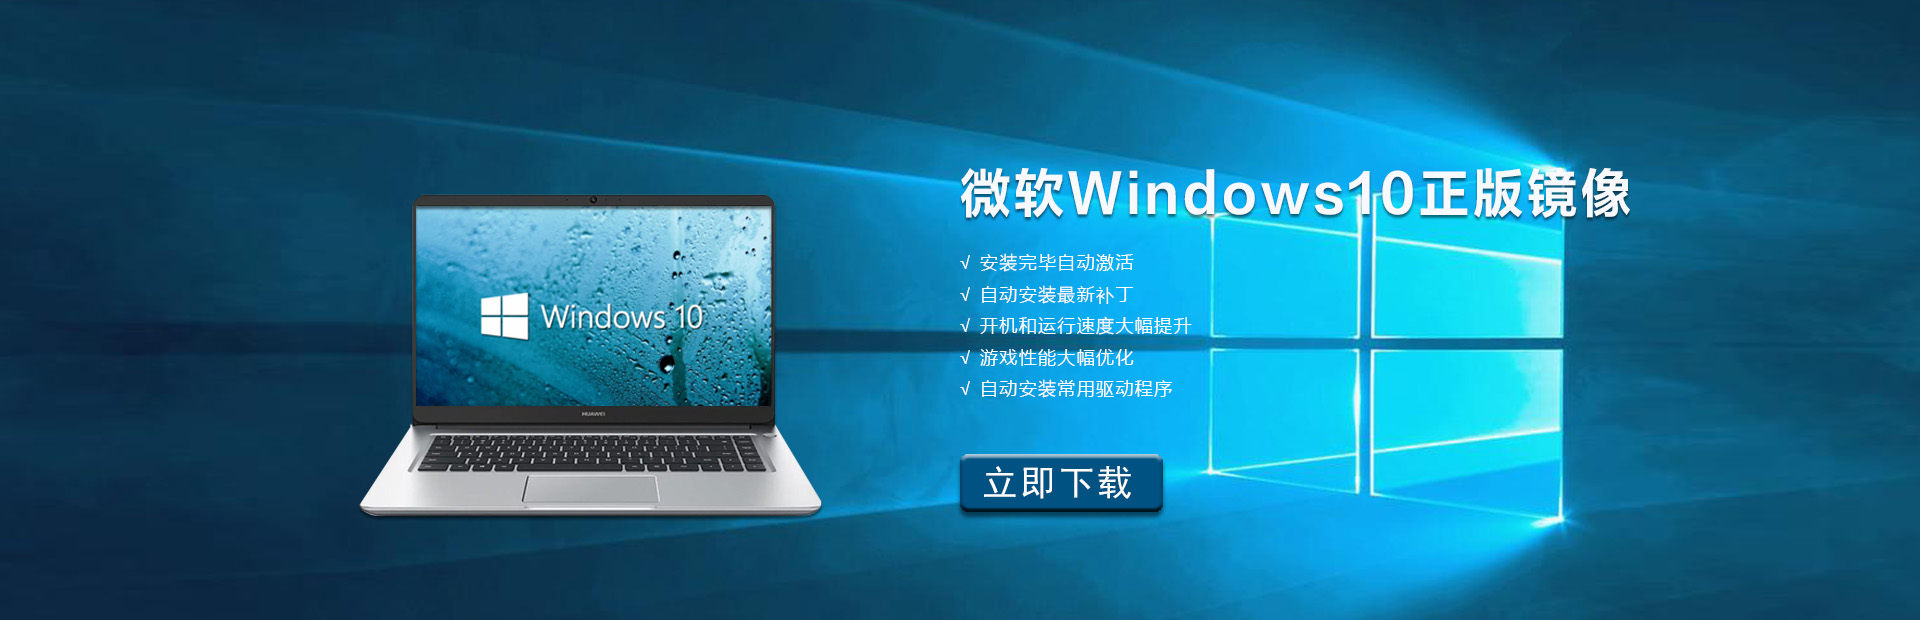 微软Windows10正版镜像下载